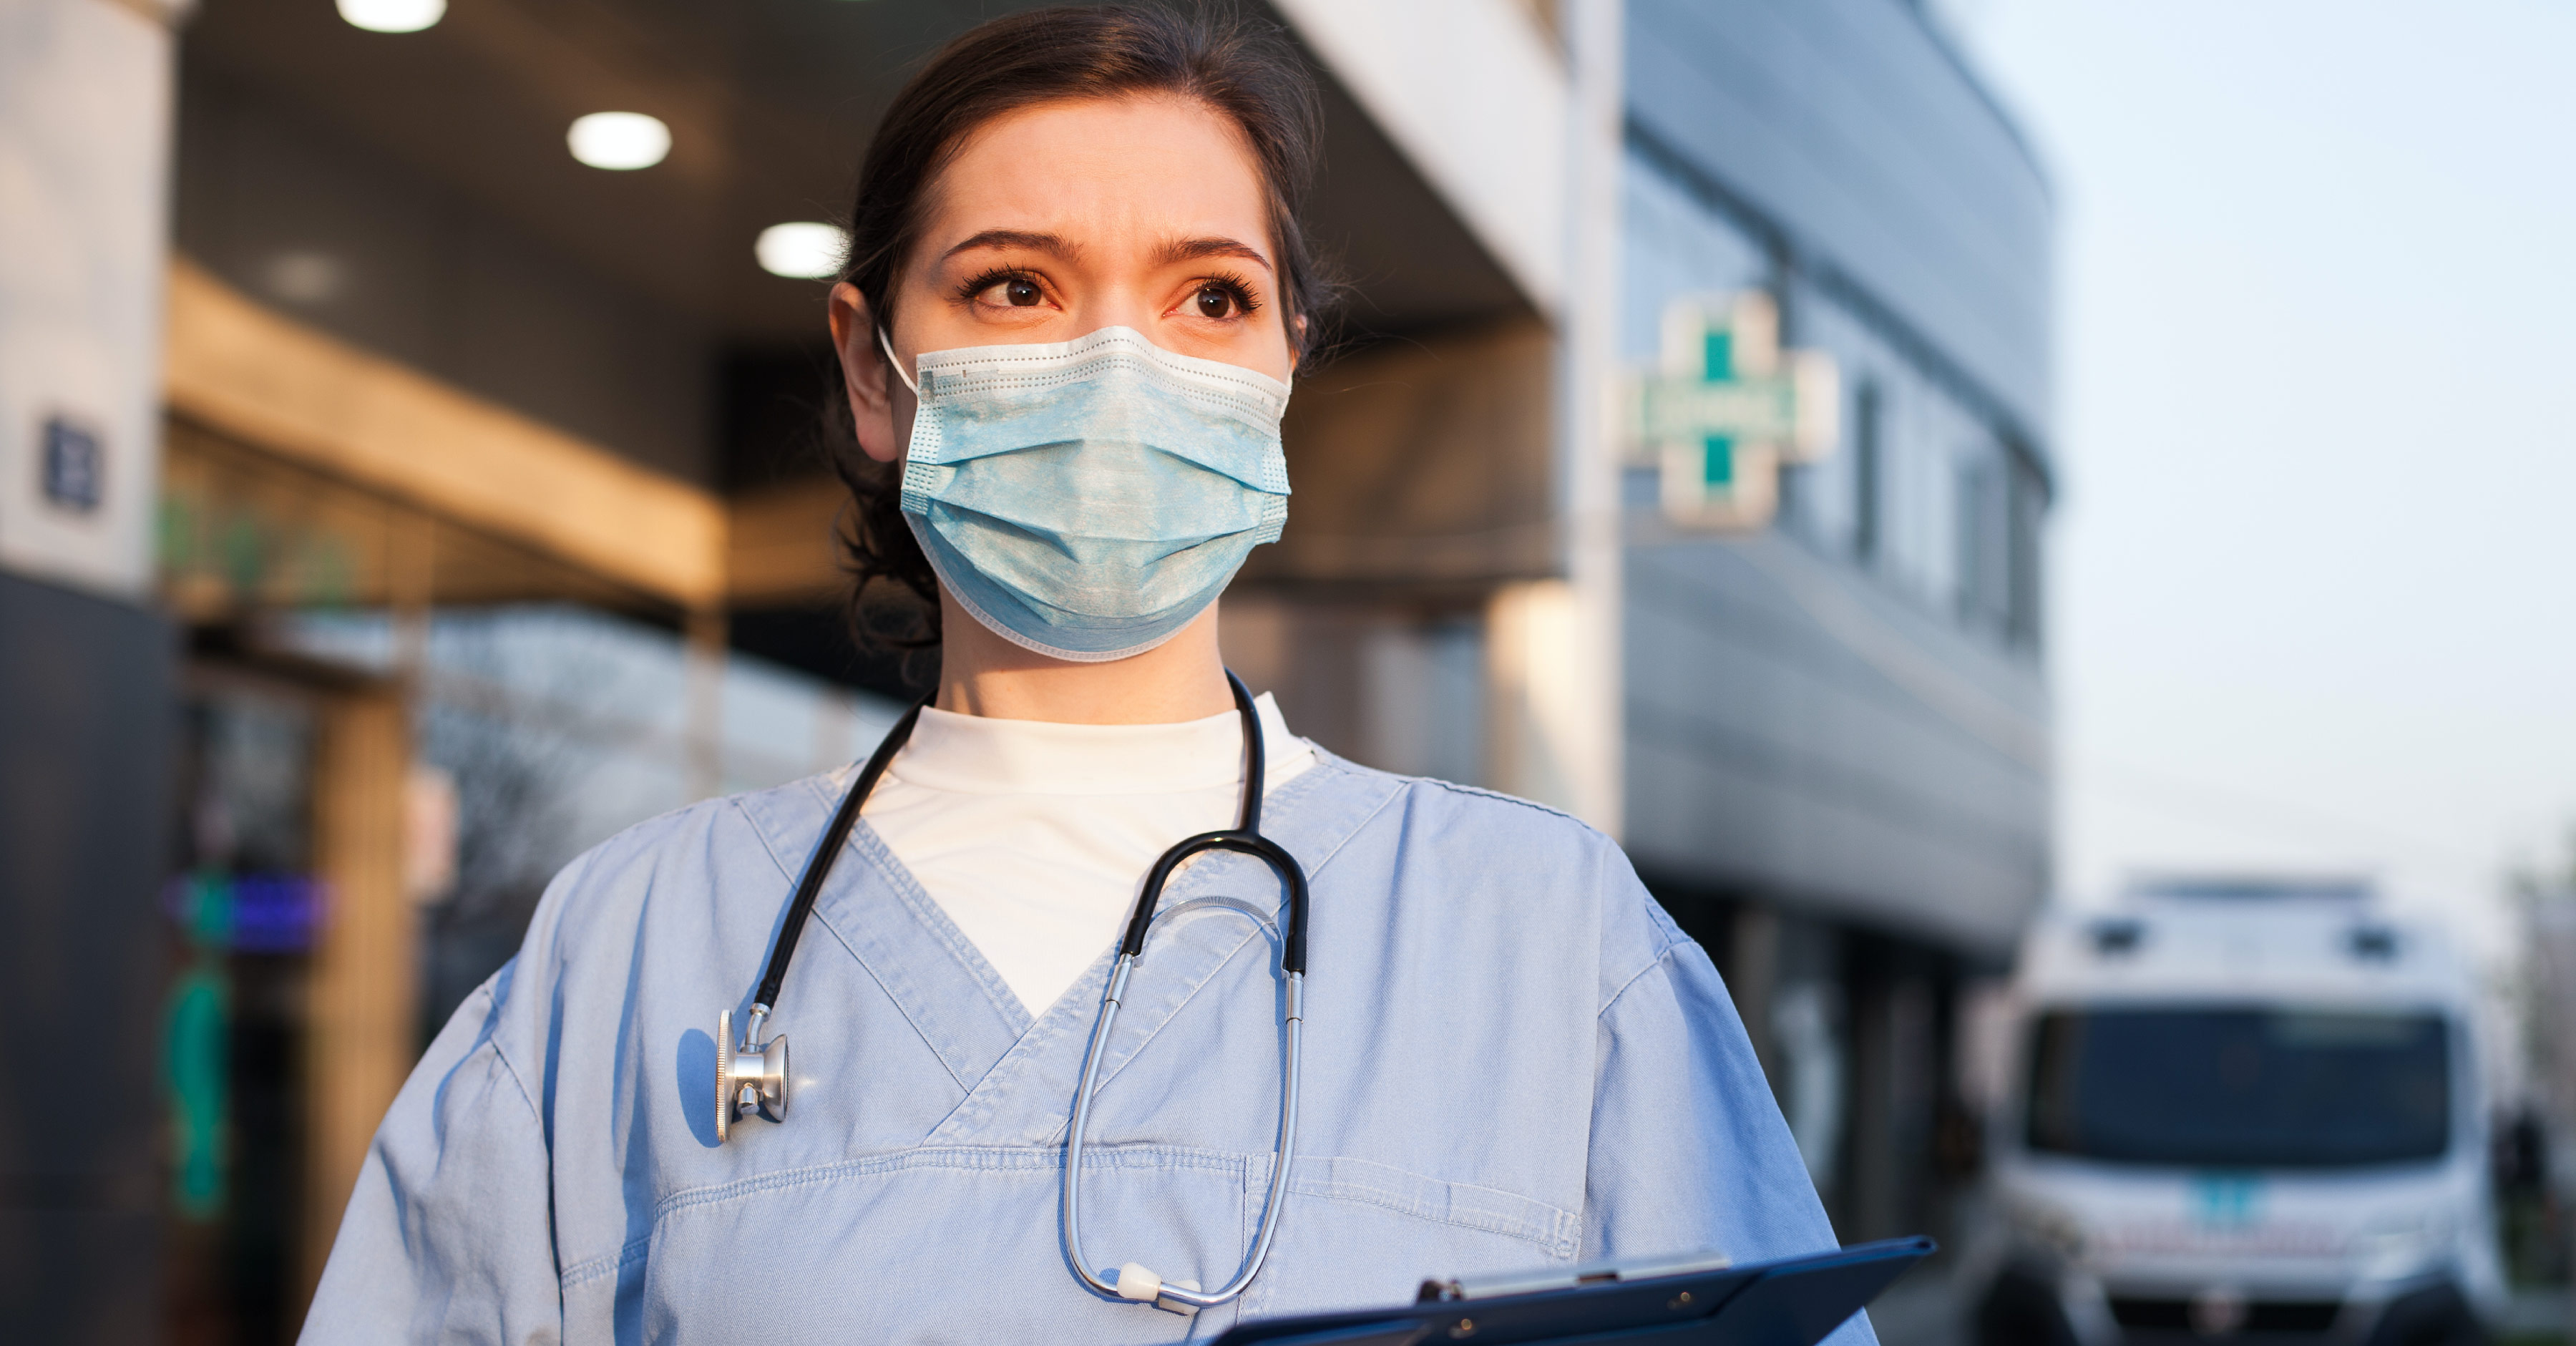 Future of nursing: Nursing leadership and frontline nurses